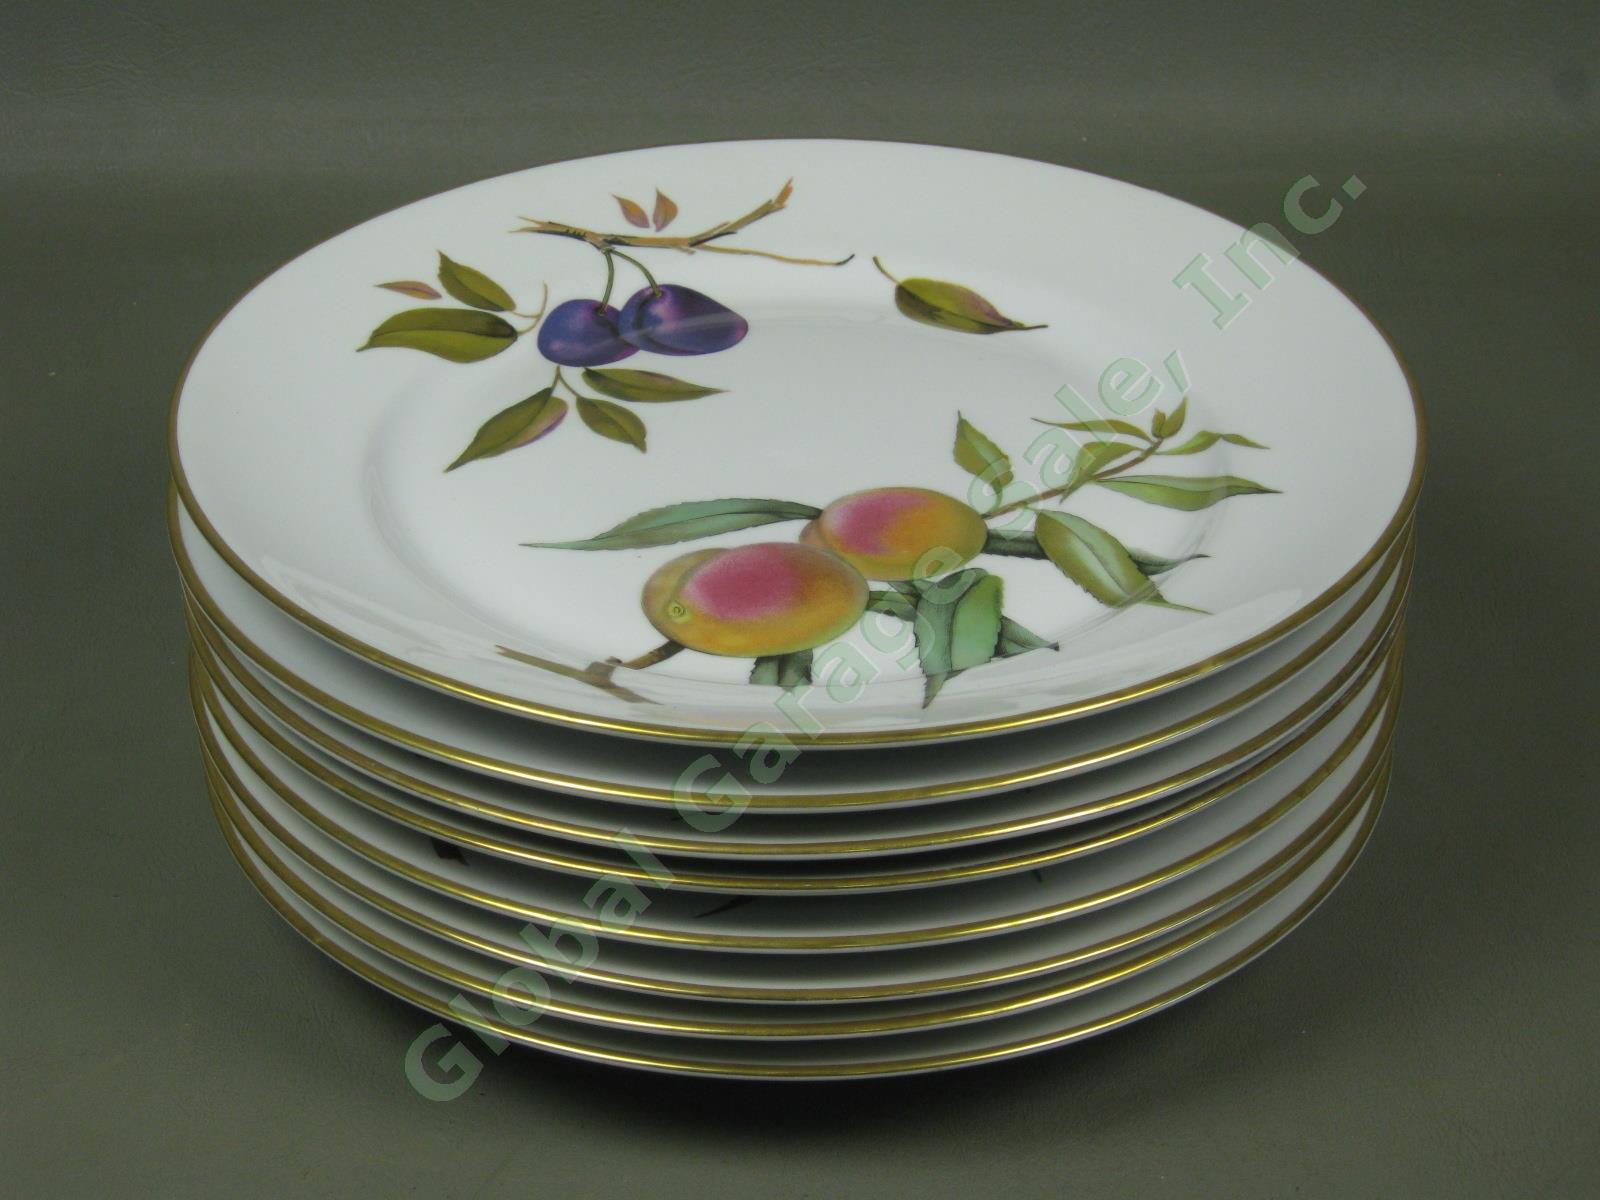 8 Vtg 1961 Royal Worcester Evesham Porcelain China 10" Dinner Plate Set Lot